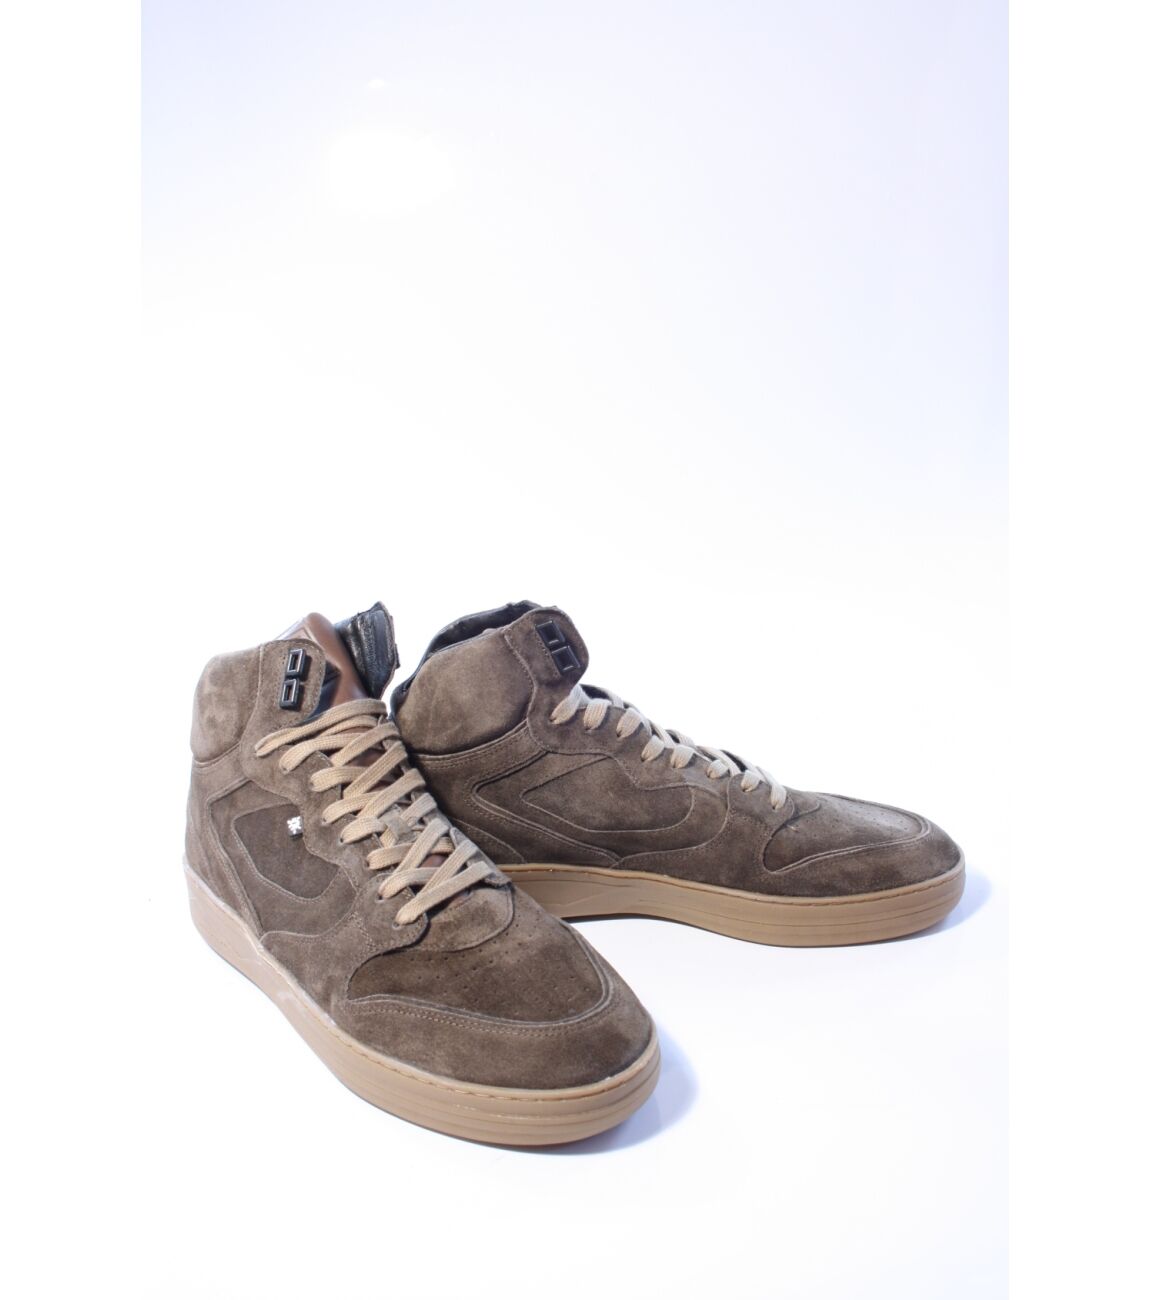 Floris v Bommel Wembli SFM-10133-34-01  - Heren sneaker - Half hoge sneaker heren  - Floris v bommel - taupe schoenen floris